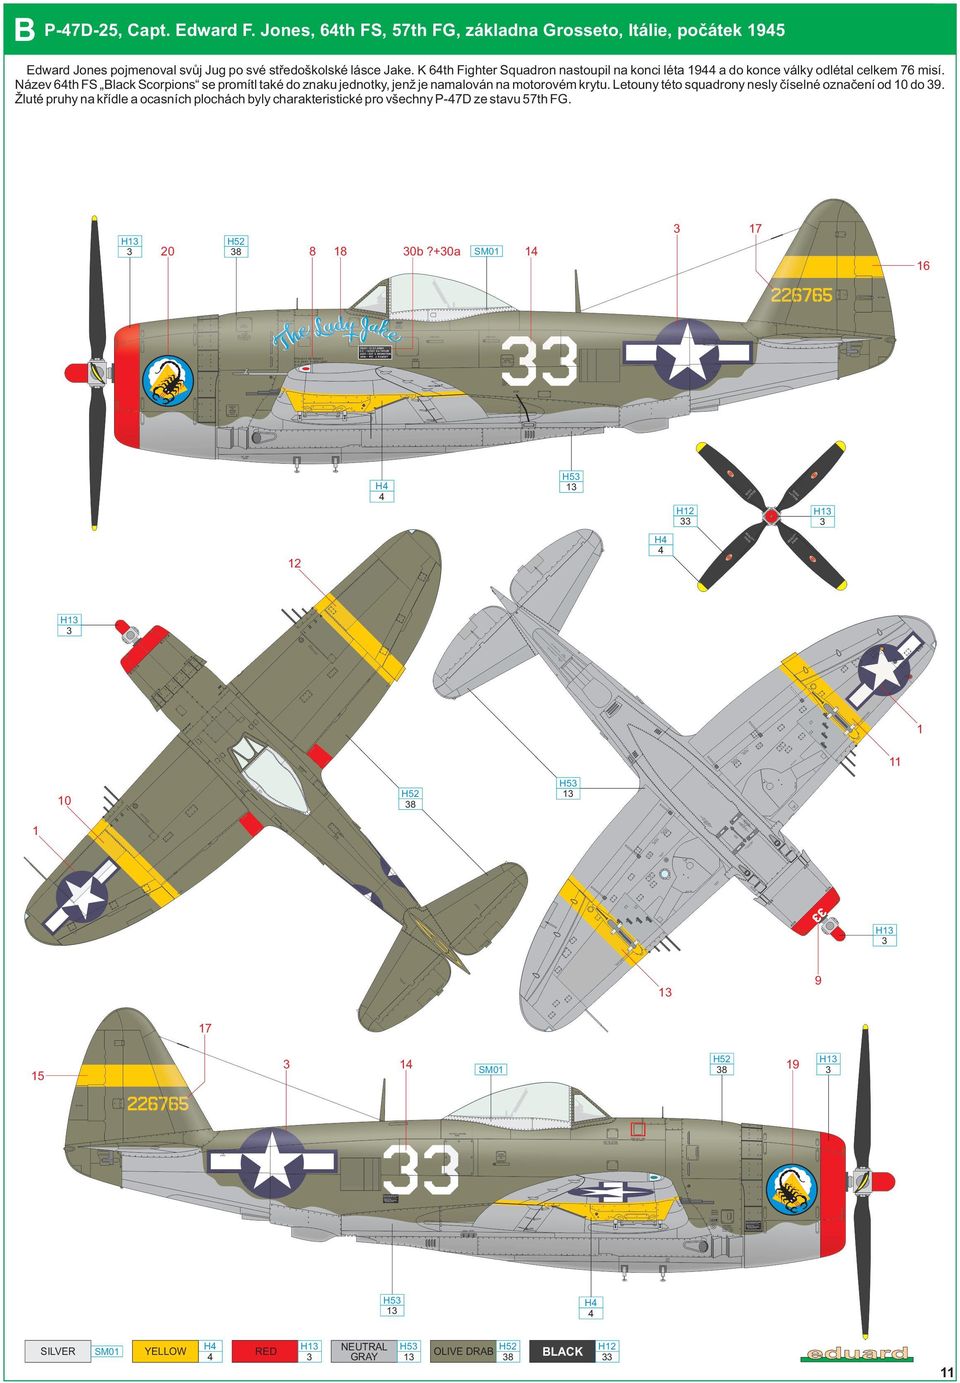 K 6th Fighter Squadron nastoupil na konci léta 9 a do konce války odlétal celkem 76 misí.